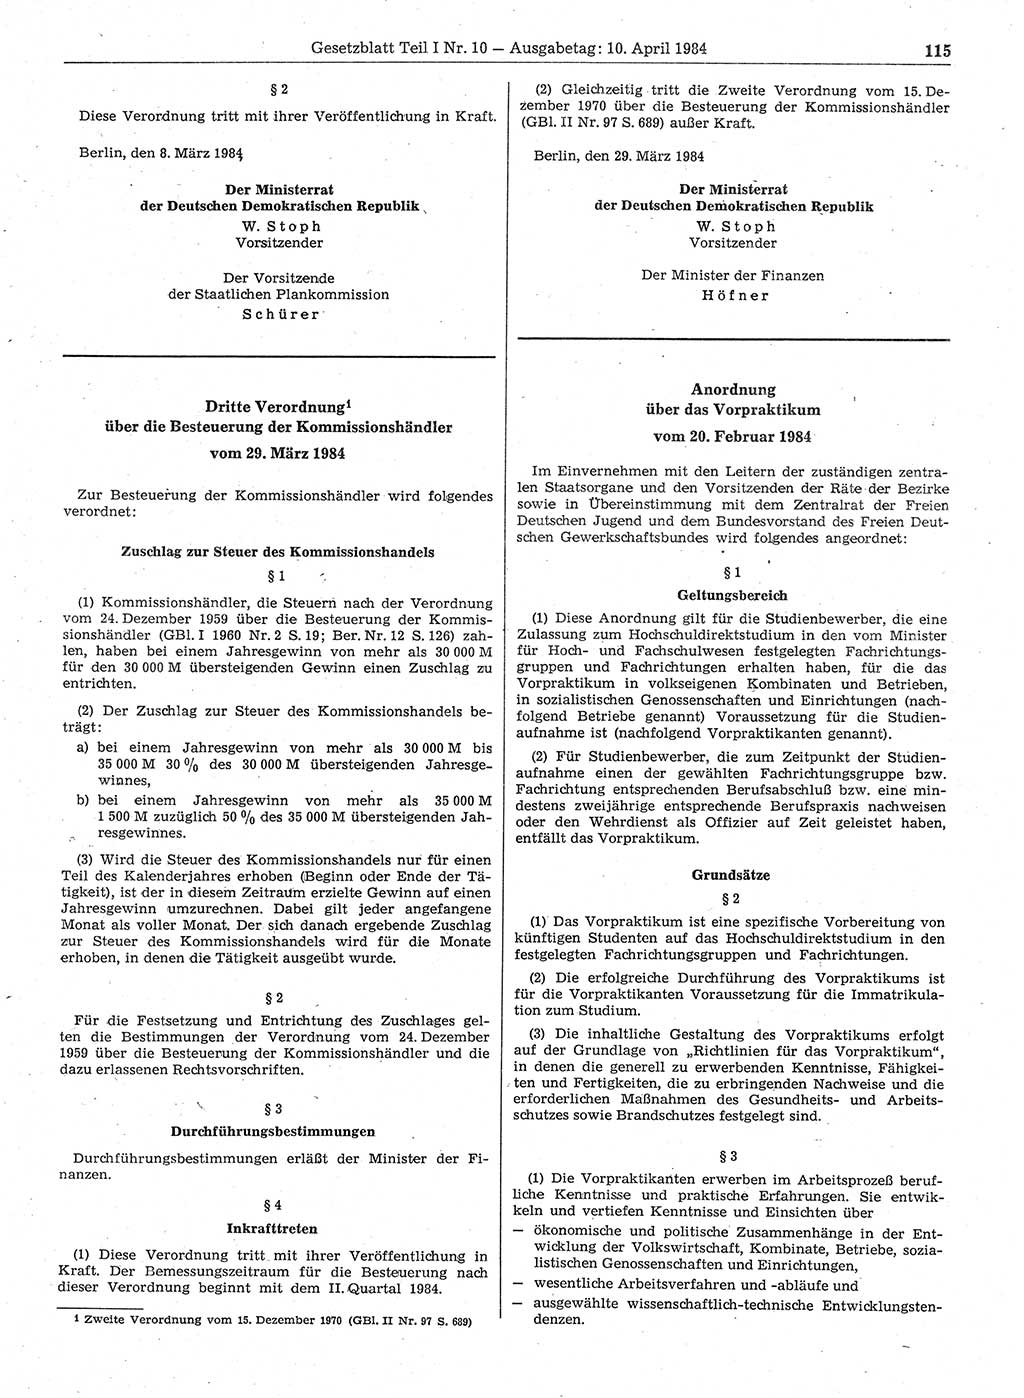 Gesetzblatt (GBl.) der Deutschen Demokratischen Republik (DDR) Teil Ⅰ 1984, Seite 115 (GBl. DDR Ⅰ 1984, S. 115)